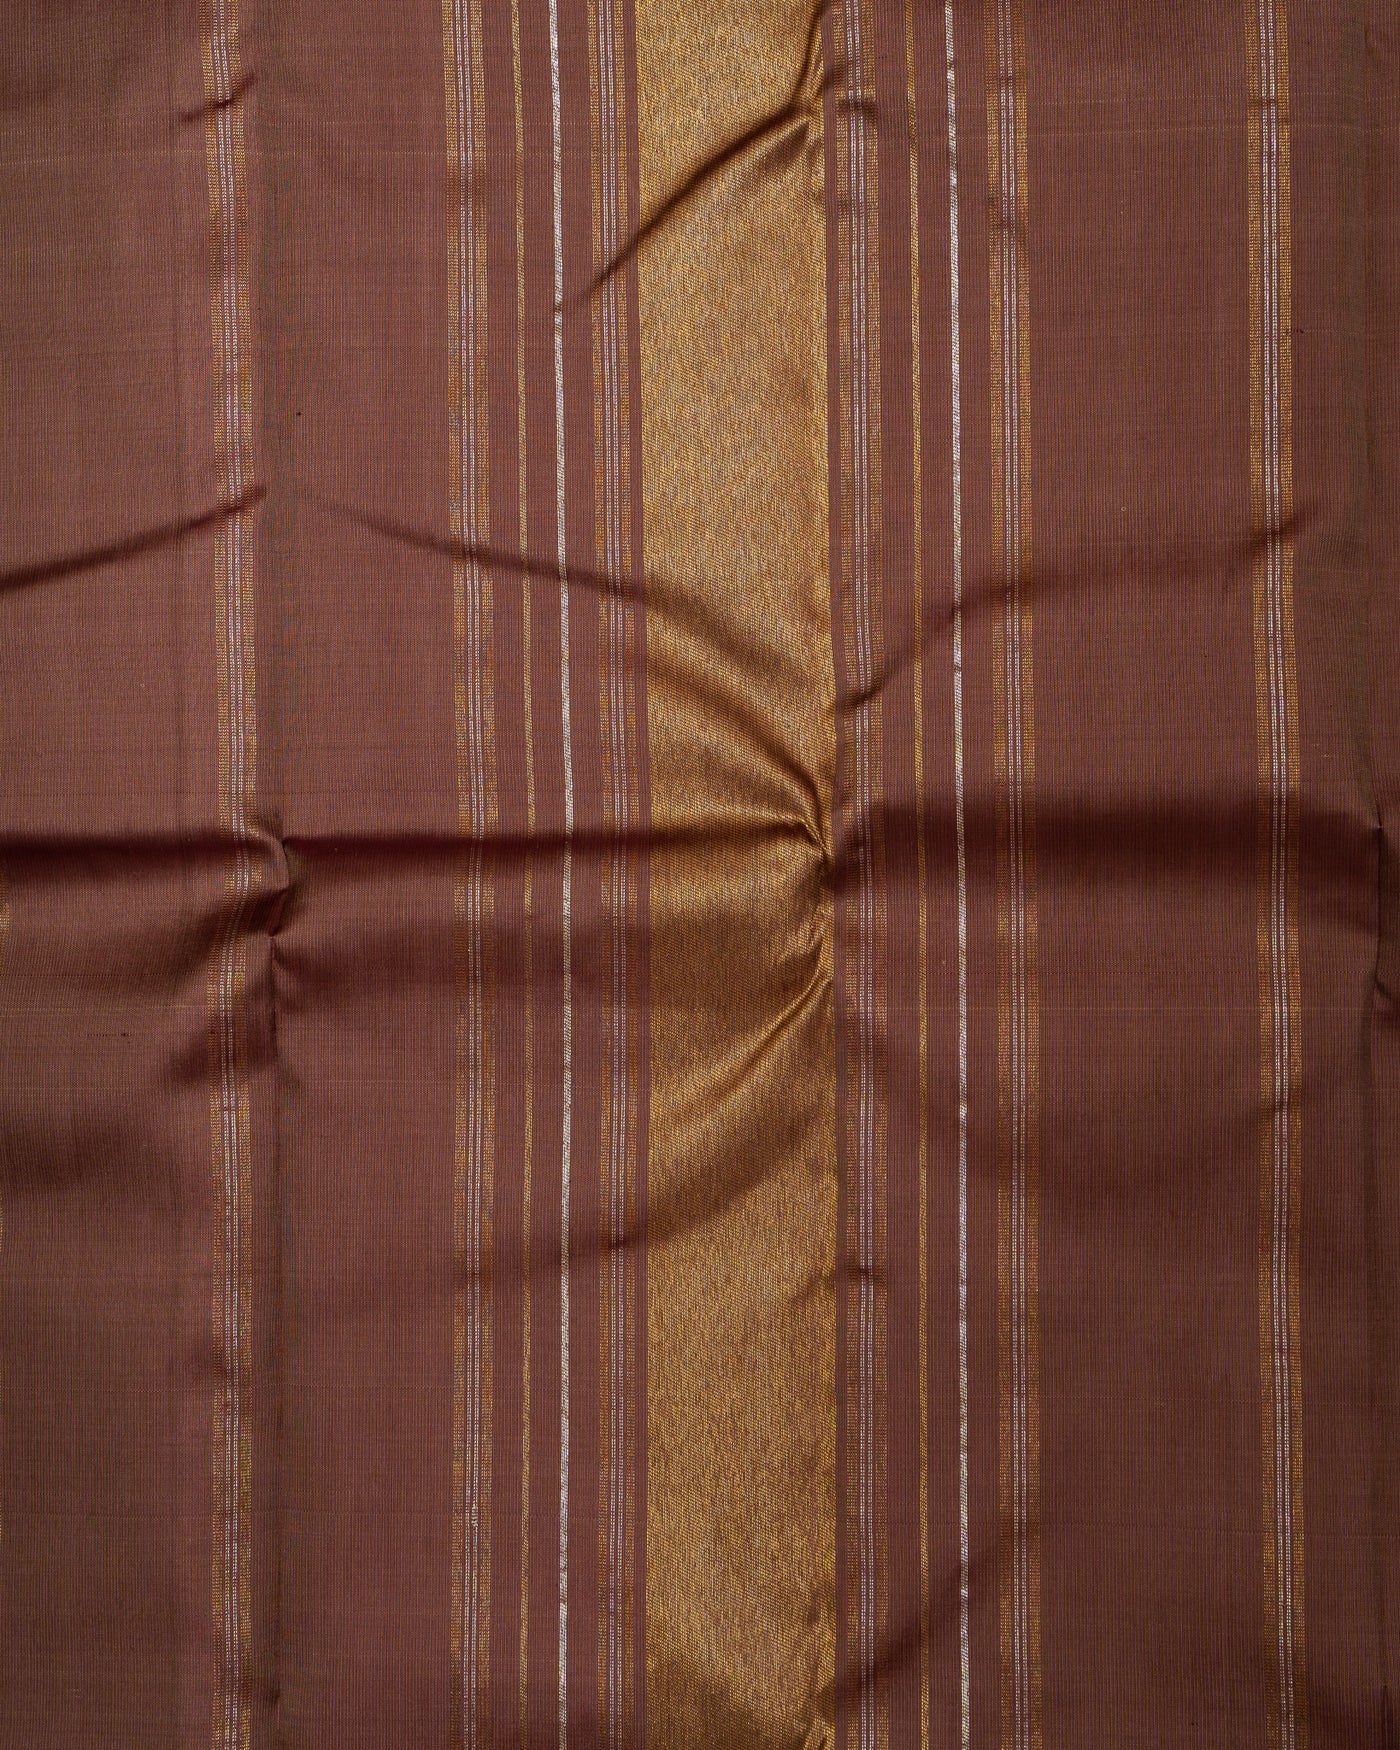 Sand Beige and Tawny Brown Pure Kanjivaram Silk Sari - Clio Silks